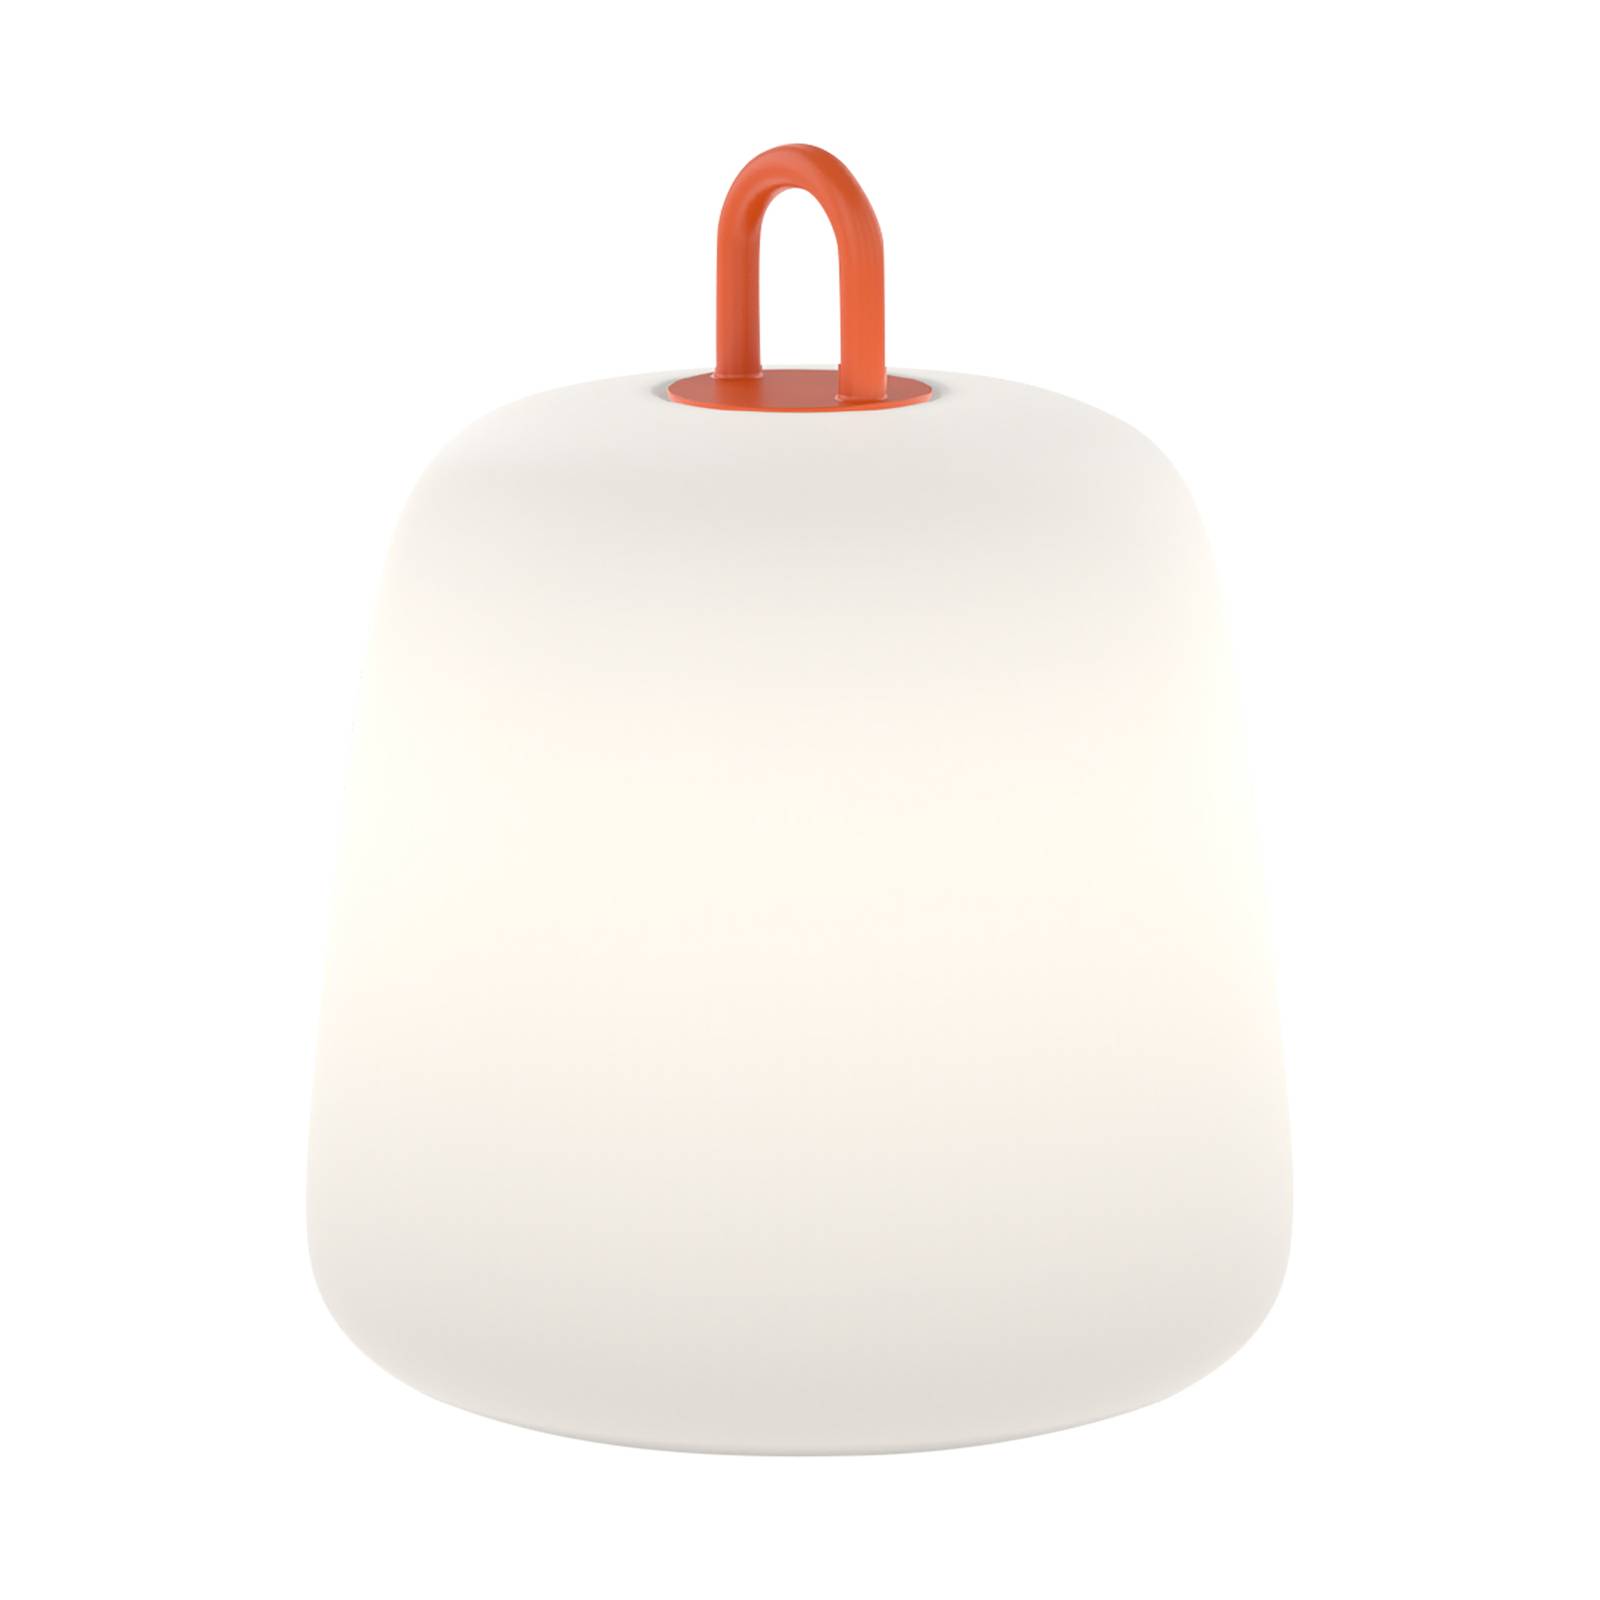 Wever & Ducré Lighting WEVER & DUCRÉ Costa 2.0 LED dekorativní lampa opál/oranžová